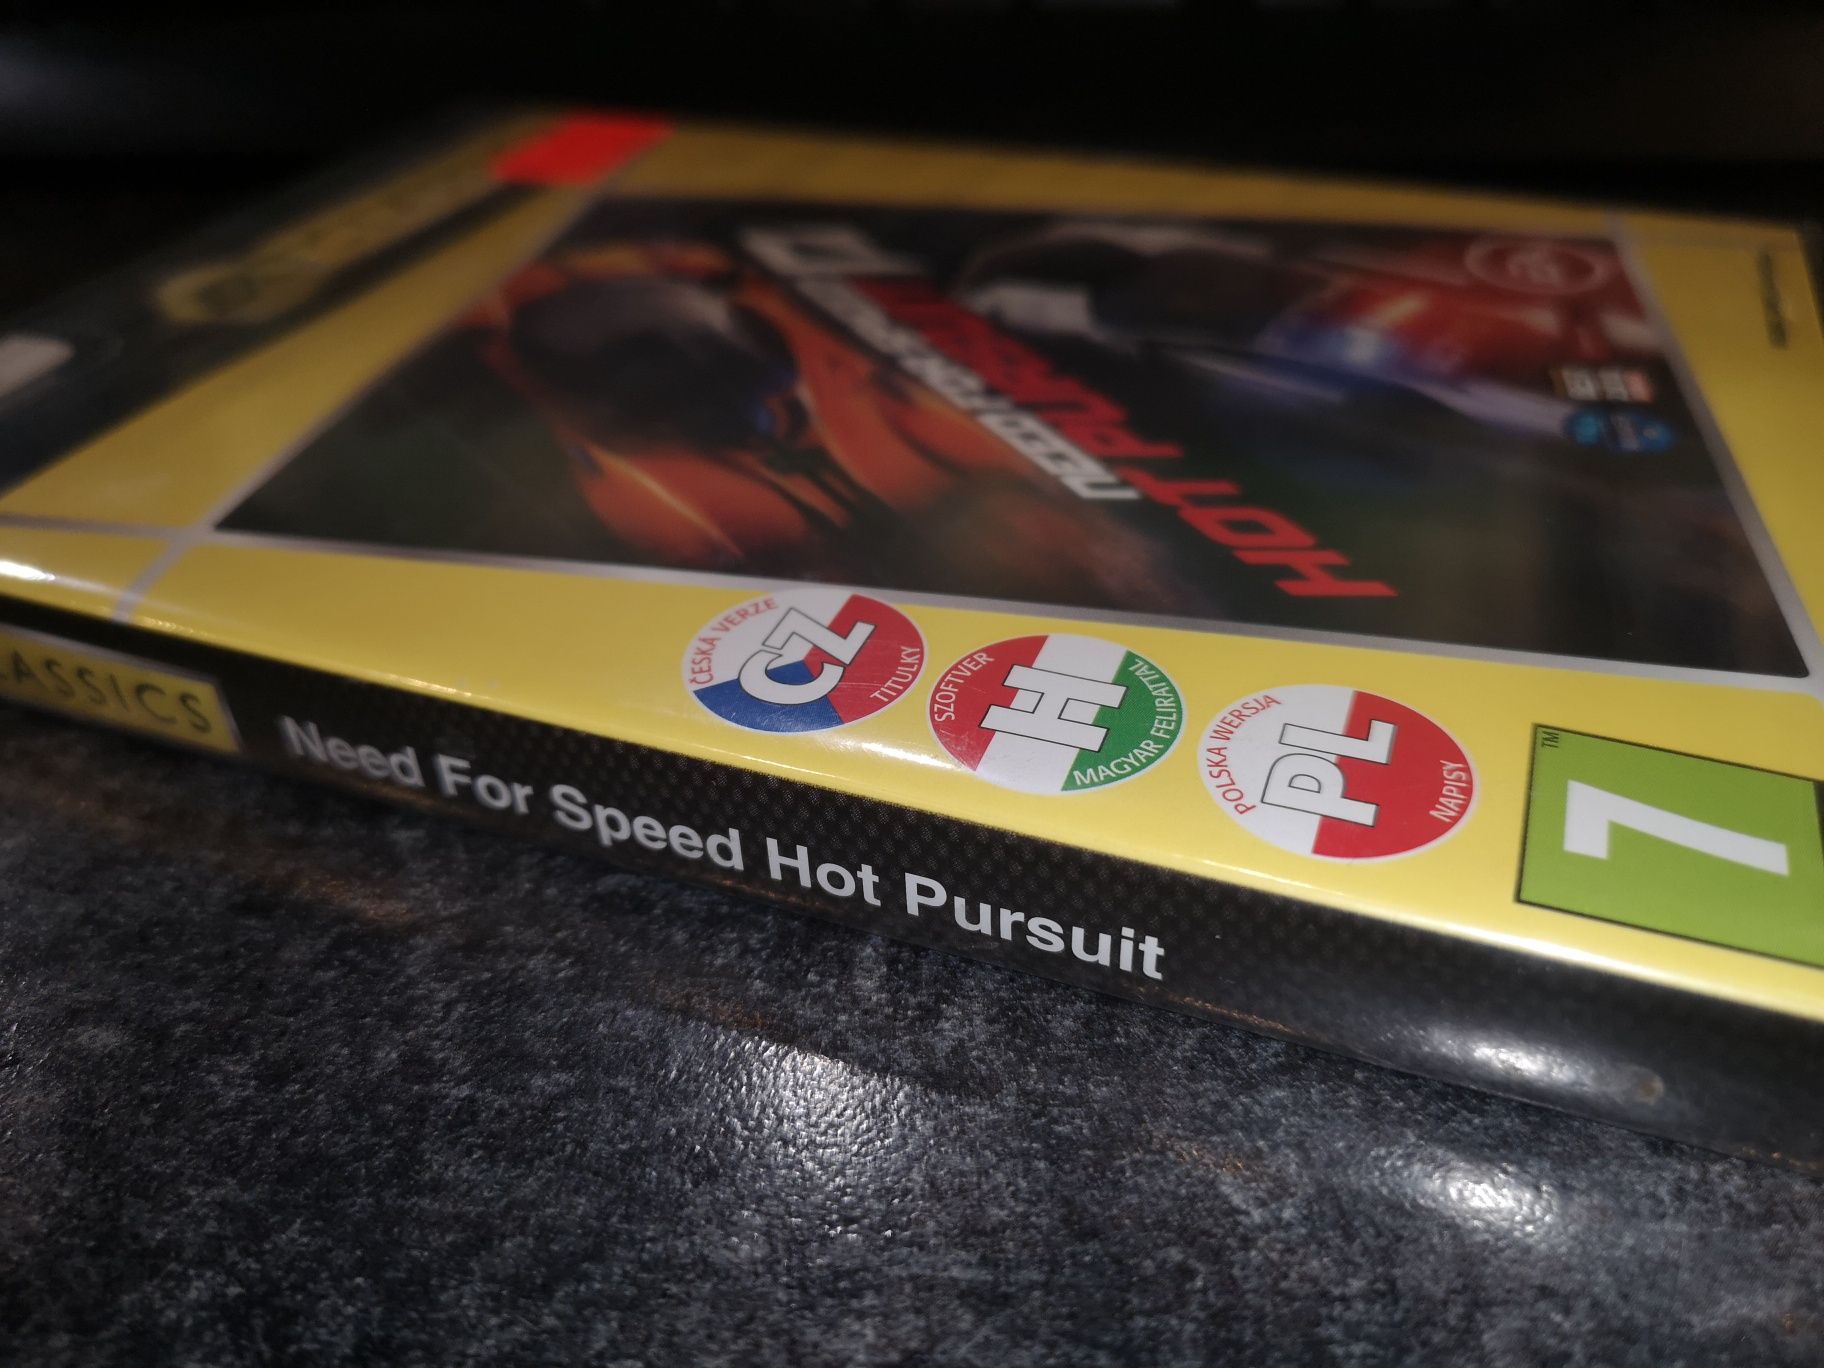 Need for Speed Hot Pursuit PC gra PL (nowa w folii) kioskzgrami